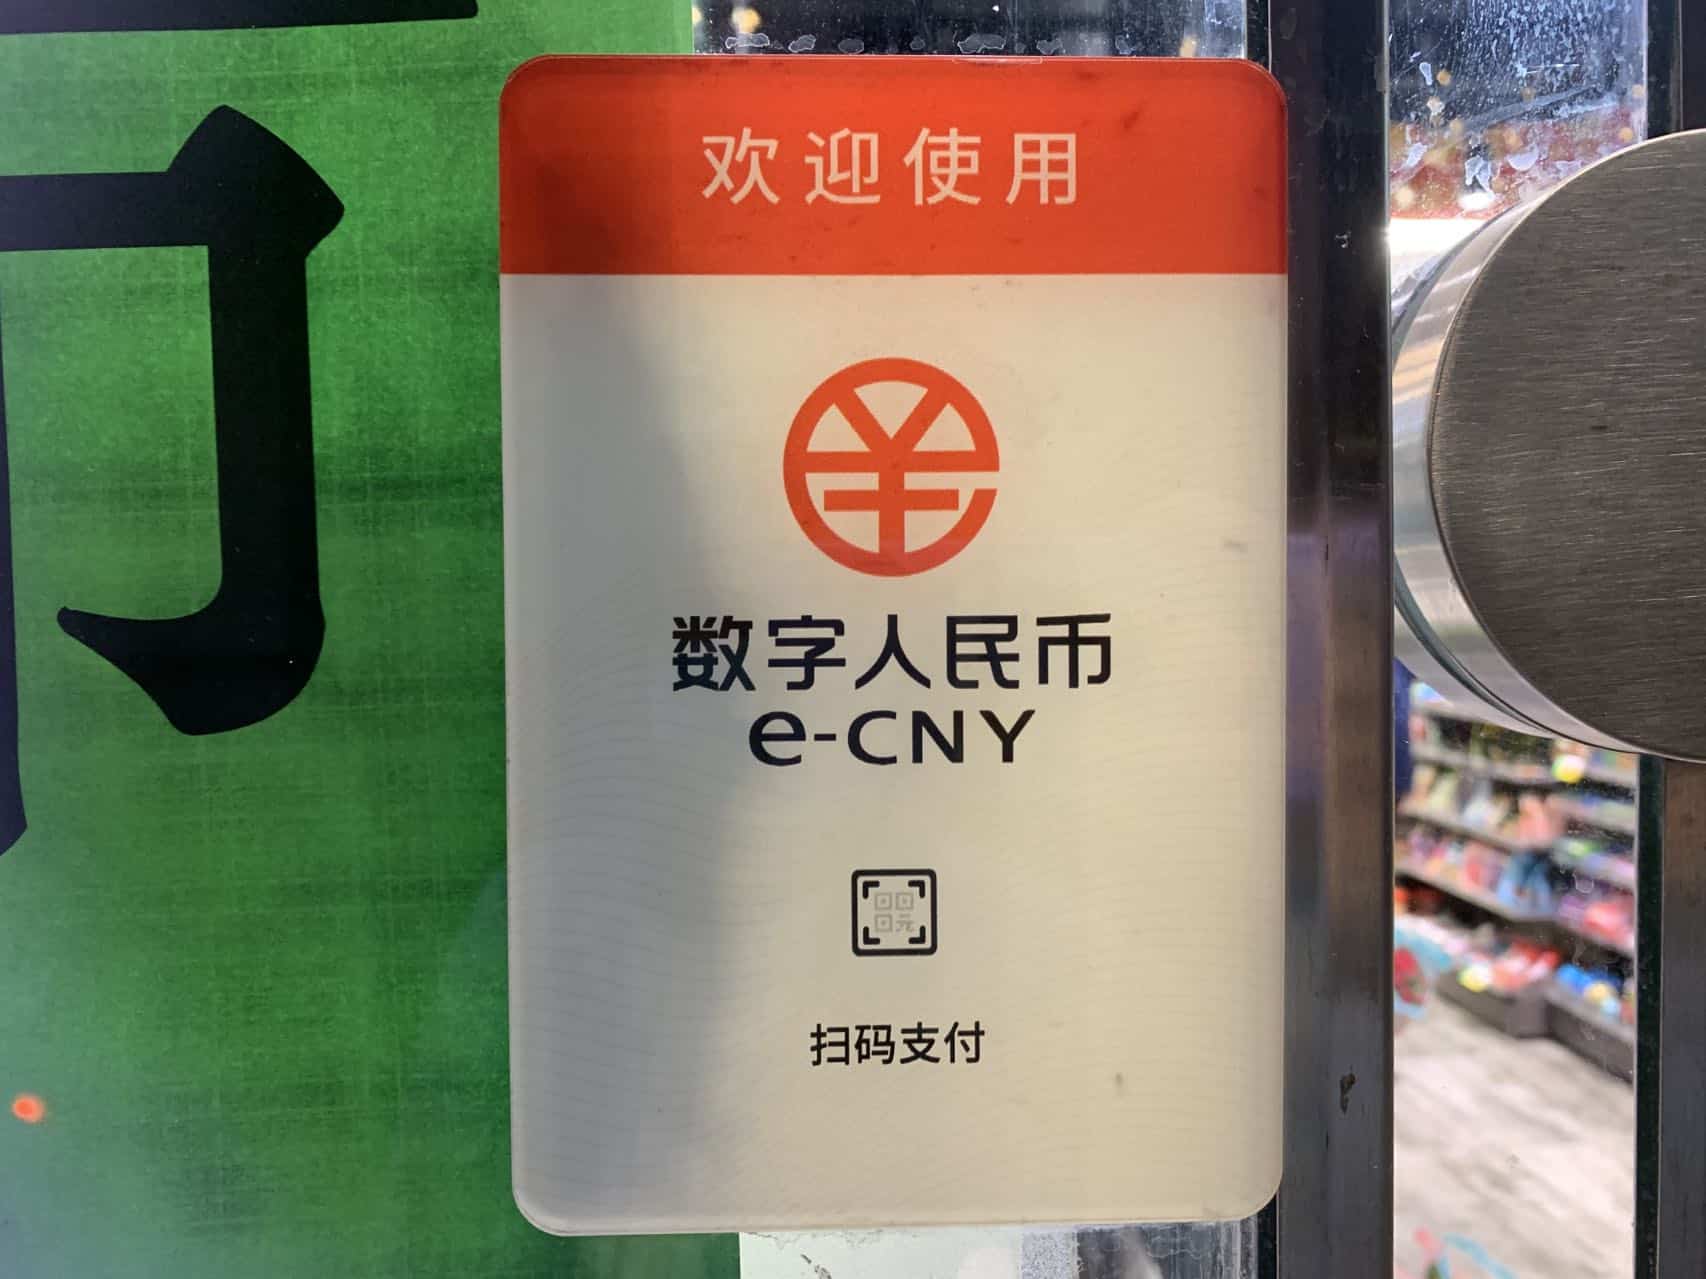 Hong Kong trials digital yuan for retail and cross-border payments